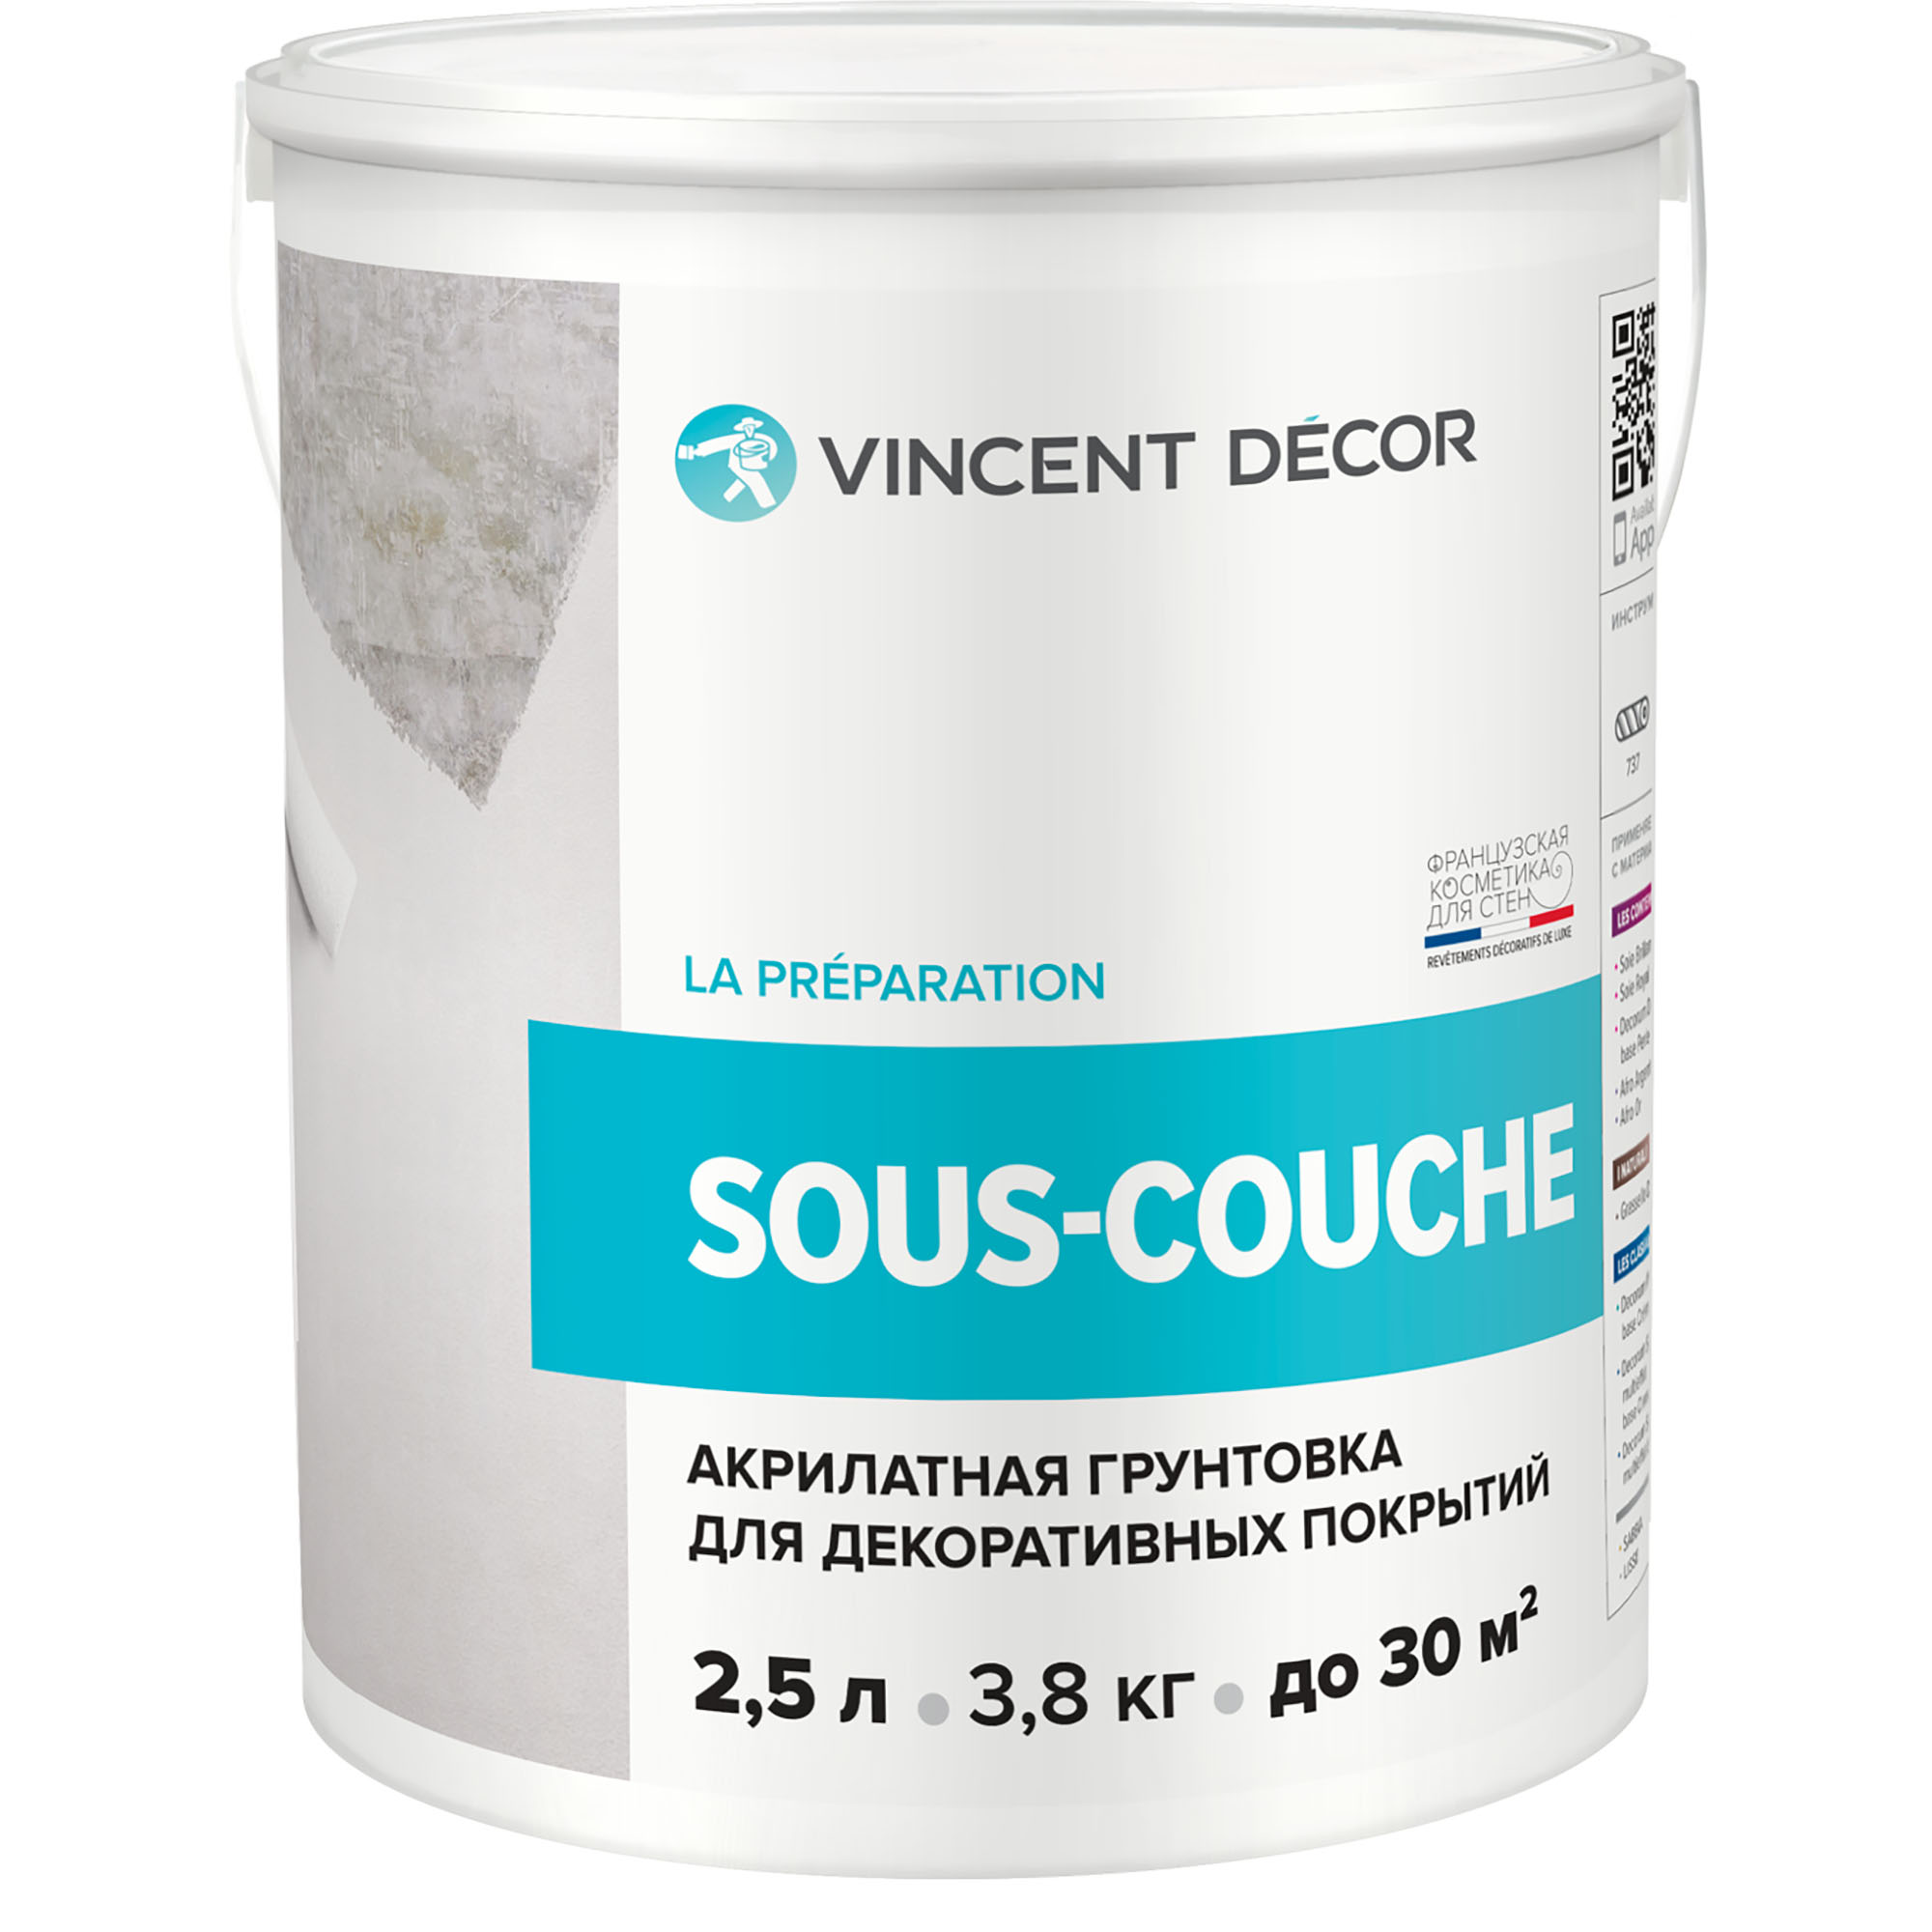 Грунтовка для декоративных покрытий Vincent Decor Sous-Couсhe 2,5 л грунтовка для декоративных покрытий vincent decor sous couсhe 2 5 л